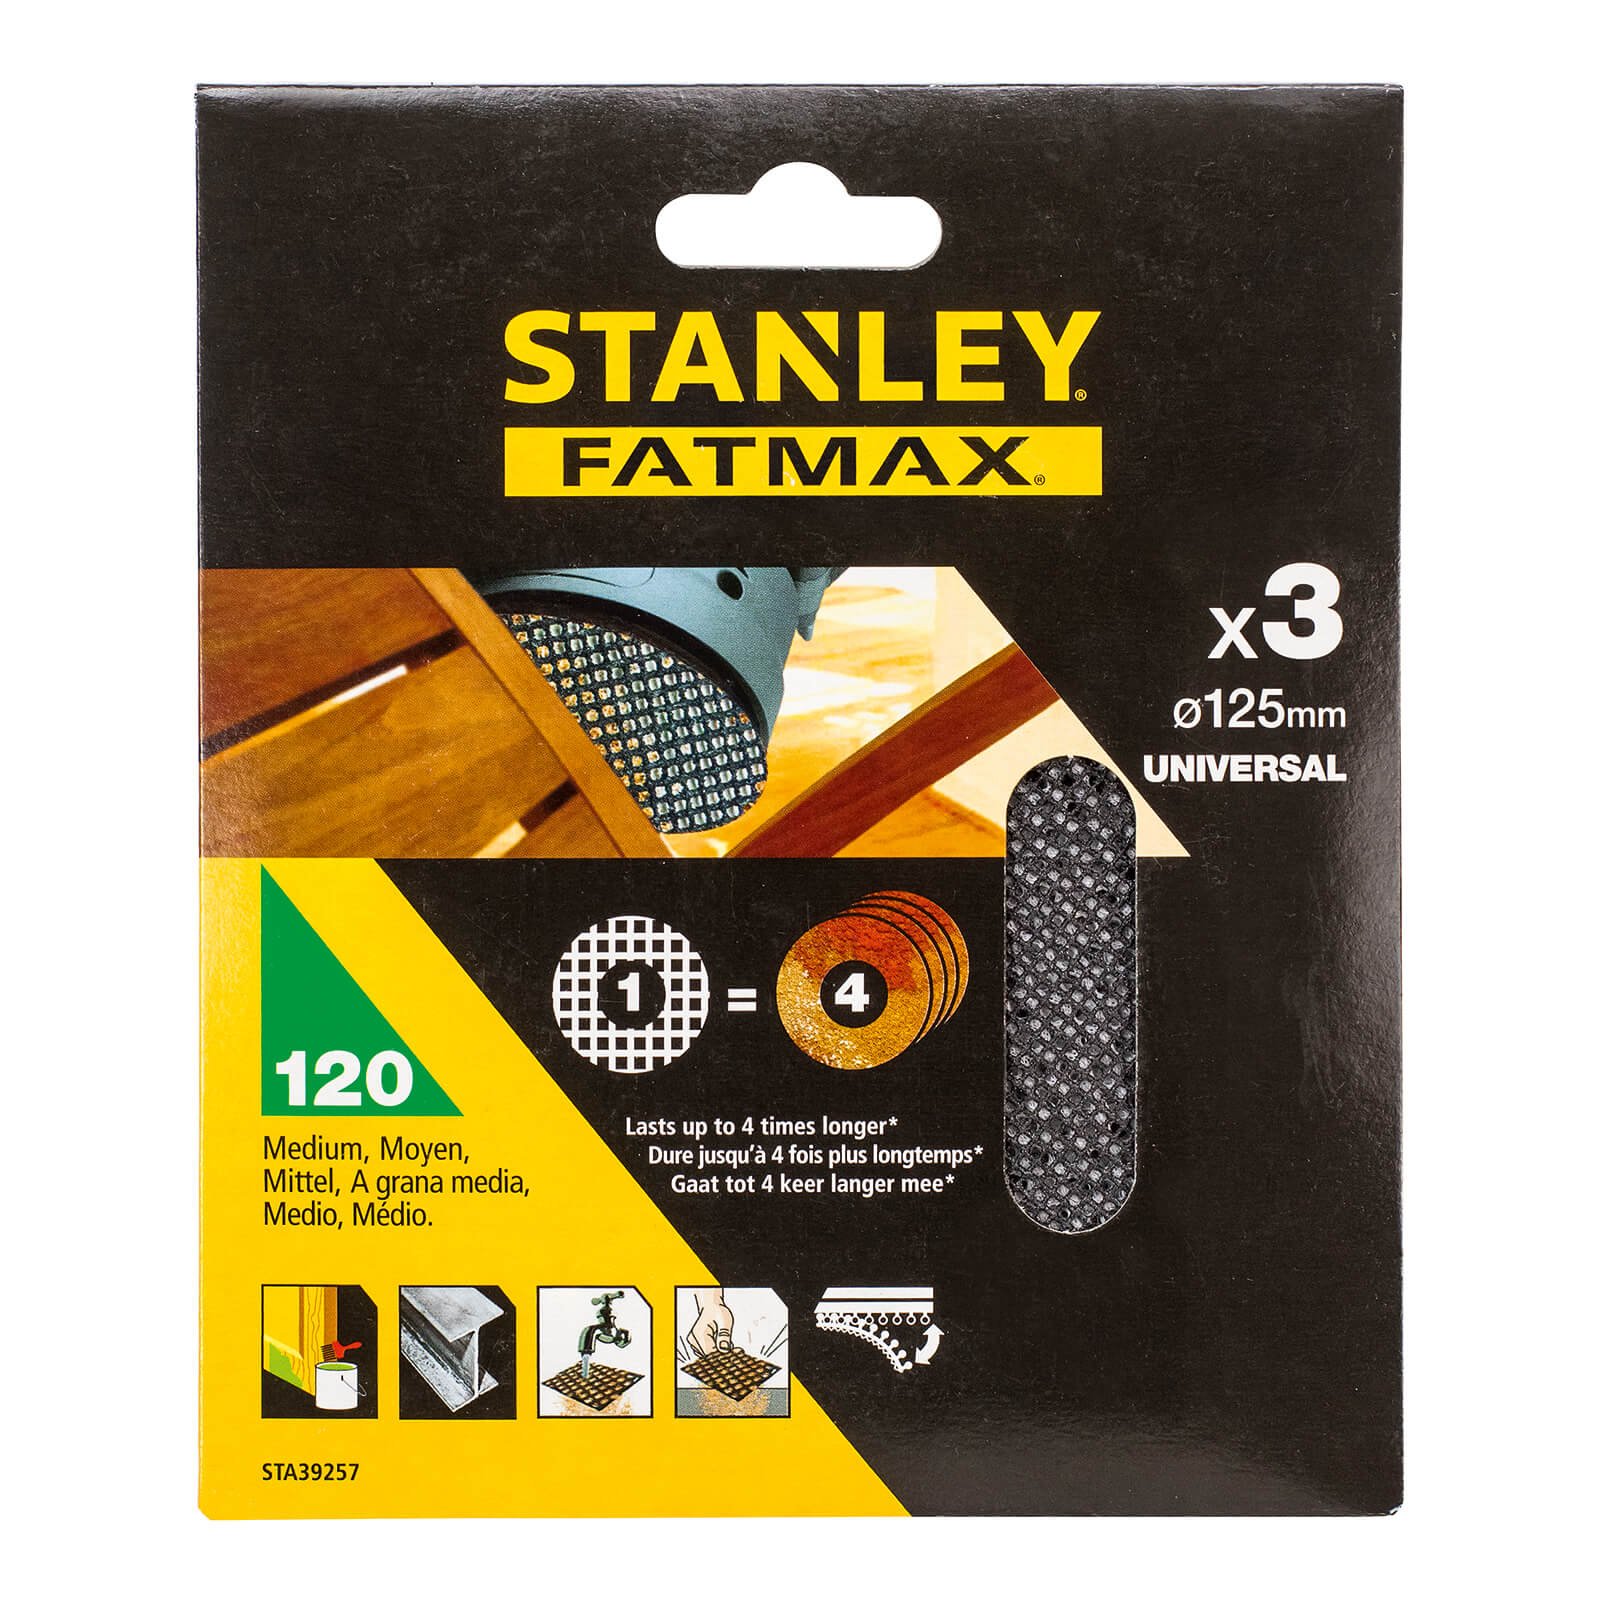 Photo of Stanley Fatmax - 3x 120g Quick Fit Random Orbital Sanding Mesh Discs 125mm